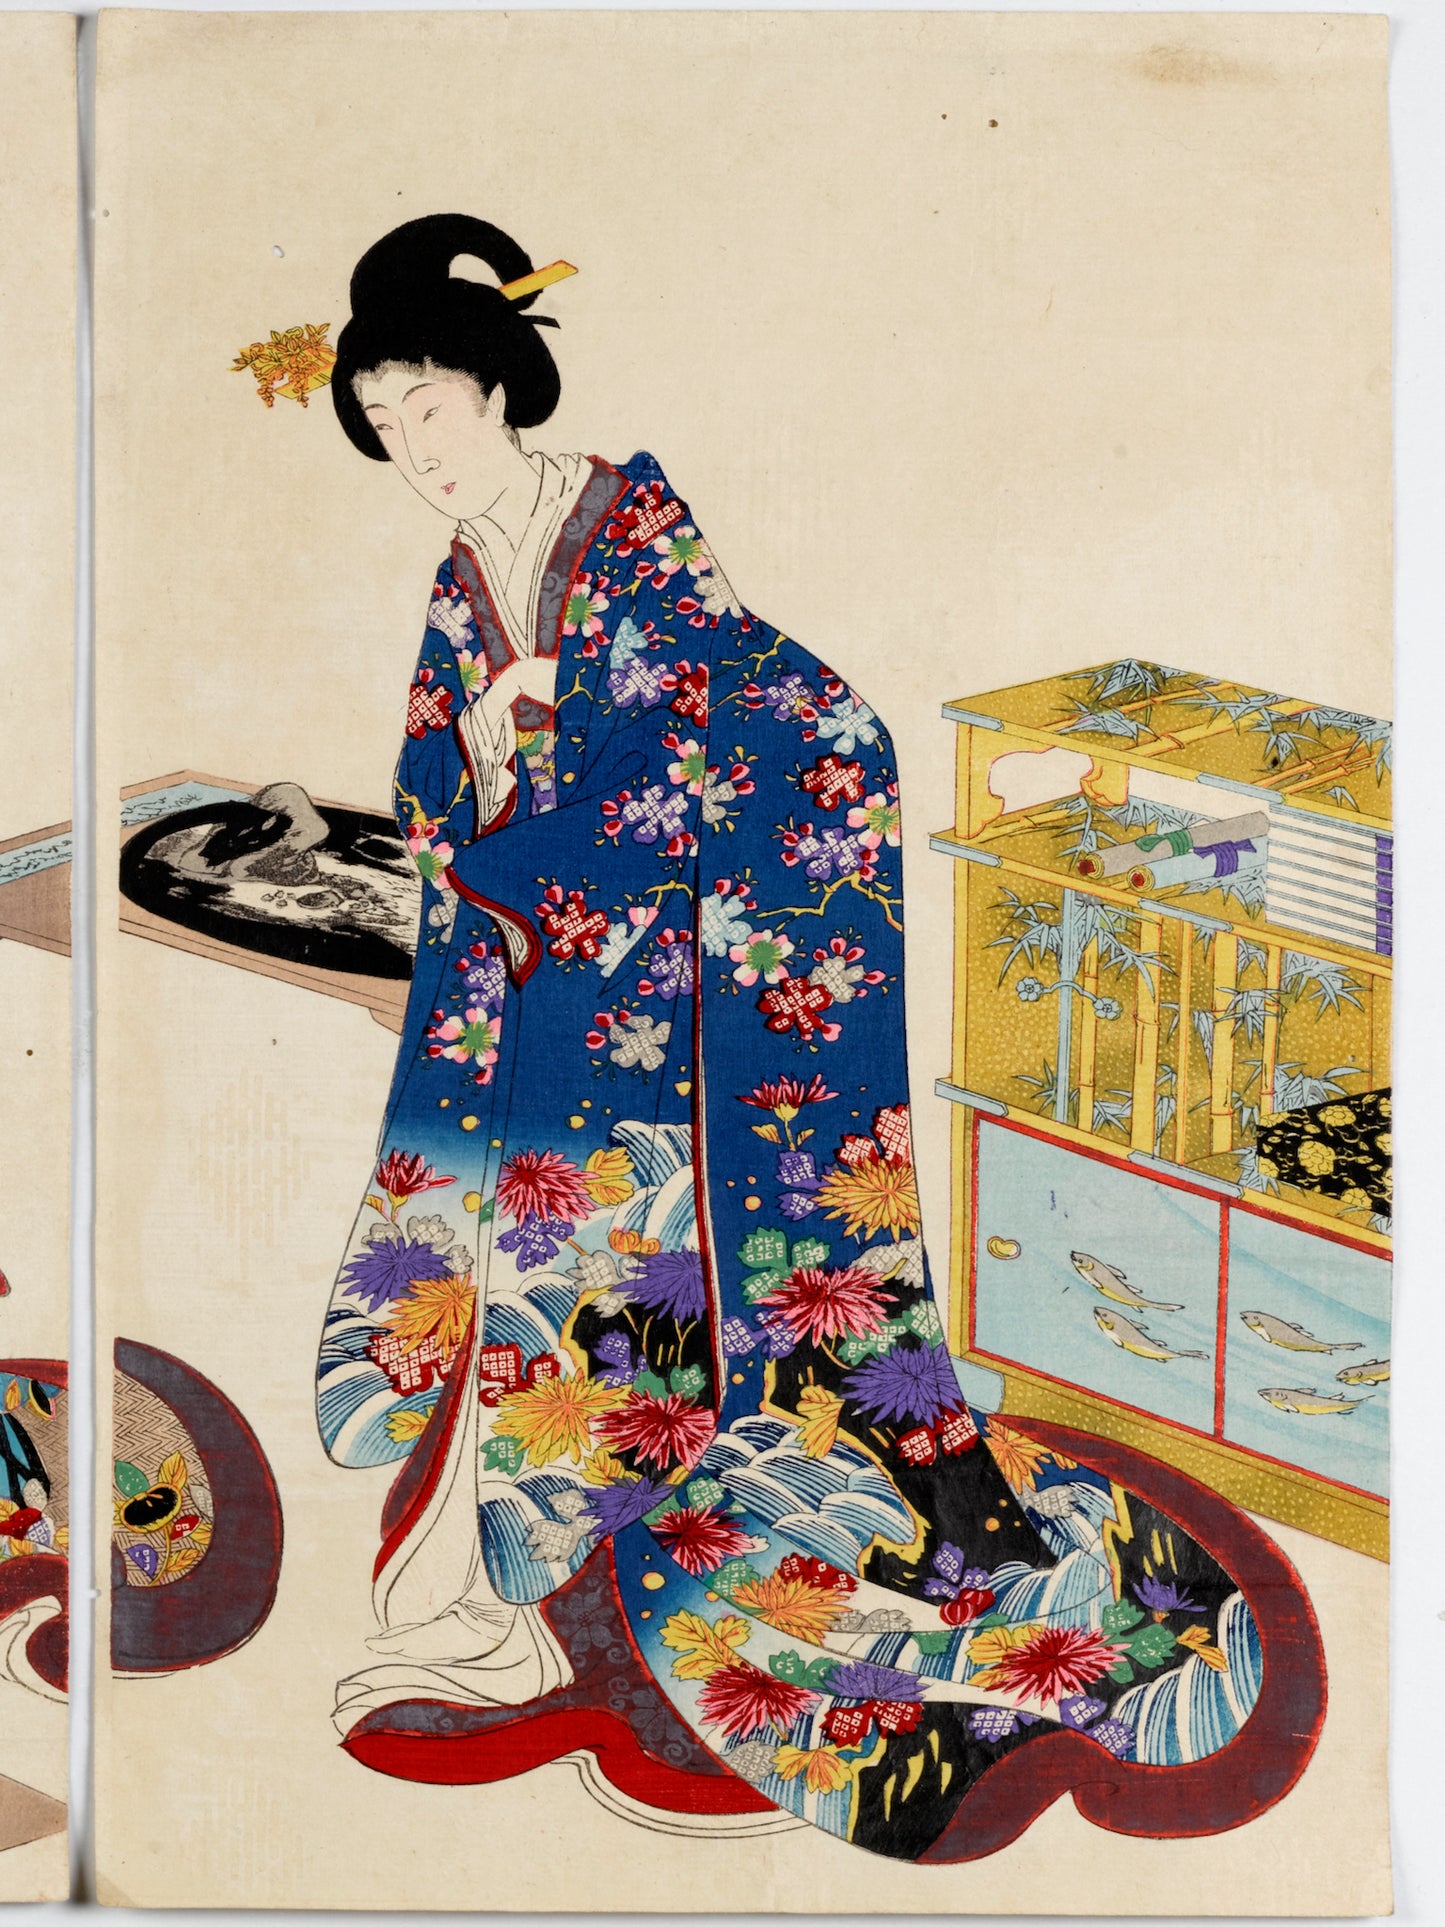 estampe japonaise de Chikanobu dames epoque tokugawa, création paysage bonkei, femme kimono bleu à fleurs et plateau dans les mains, étagère jaune avec rouleaux kakemono, motifs bambou et poissons